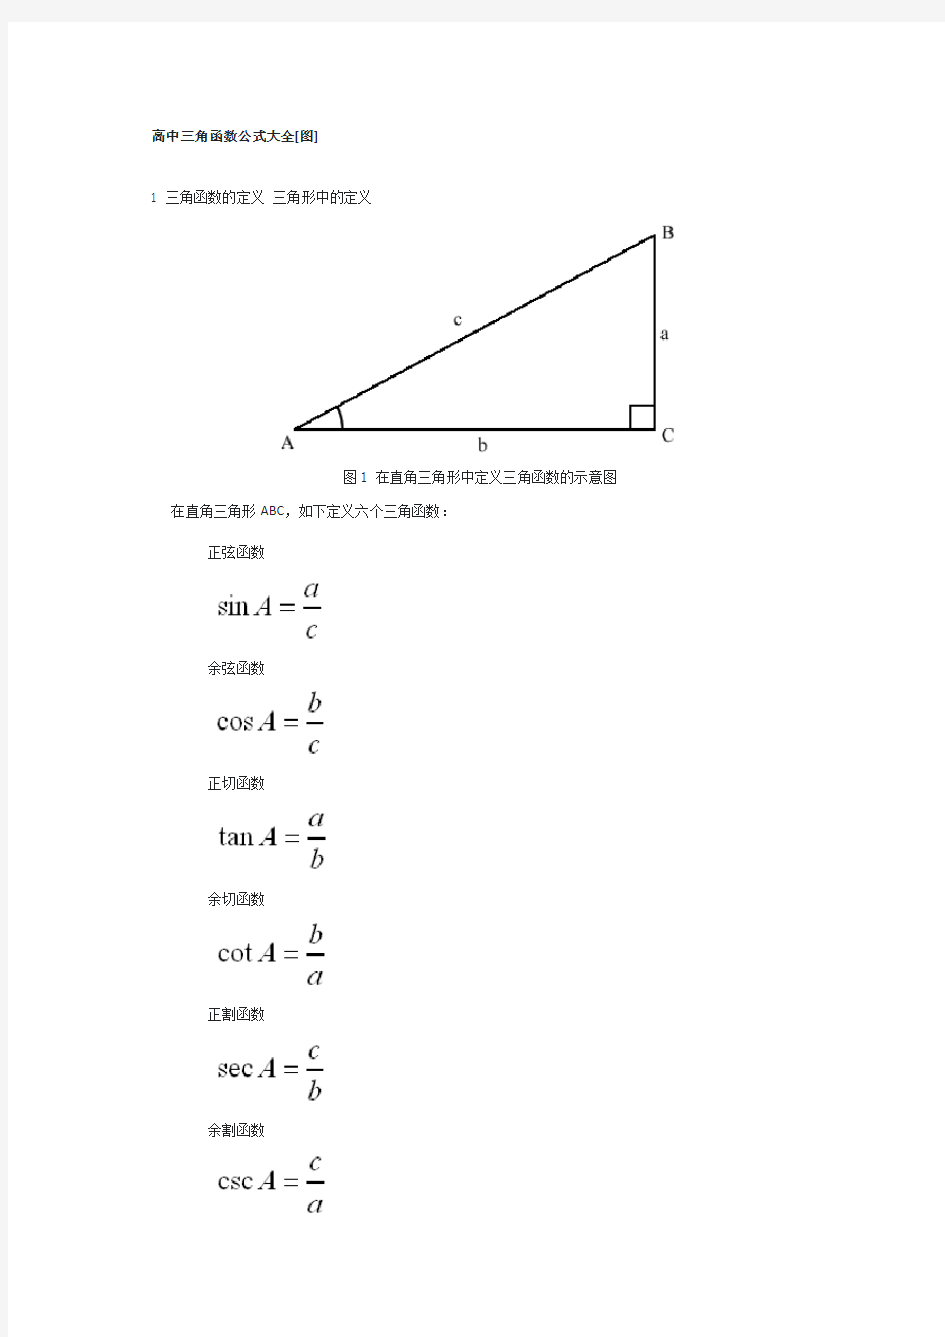 三角函数公式大全(很详细)